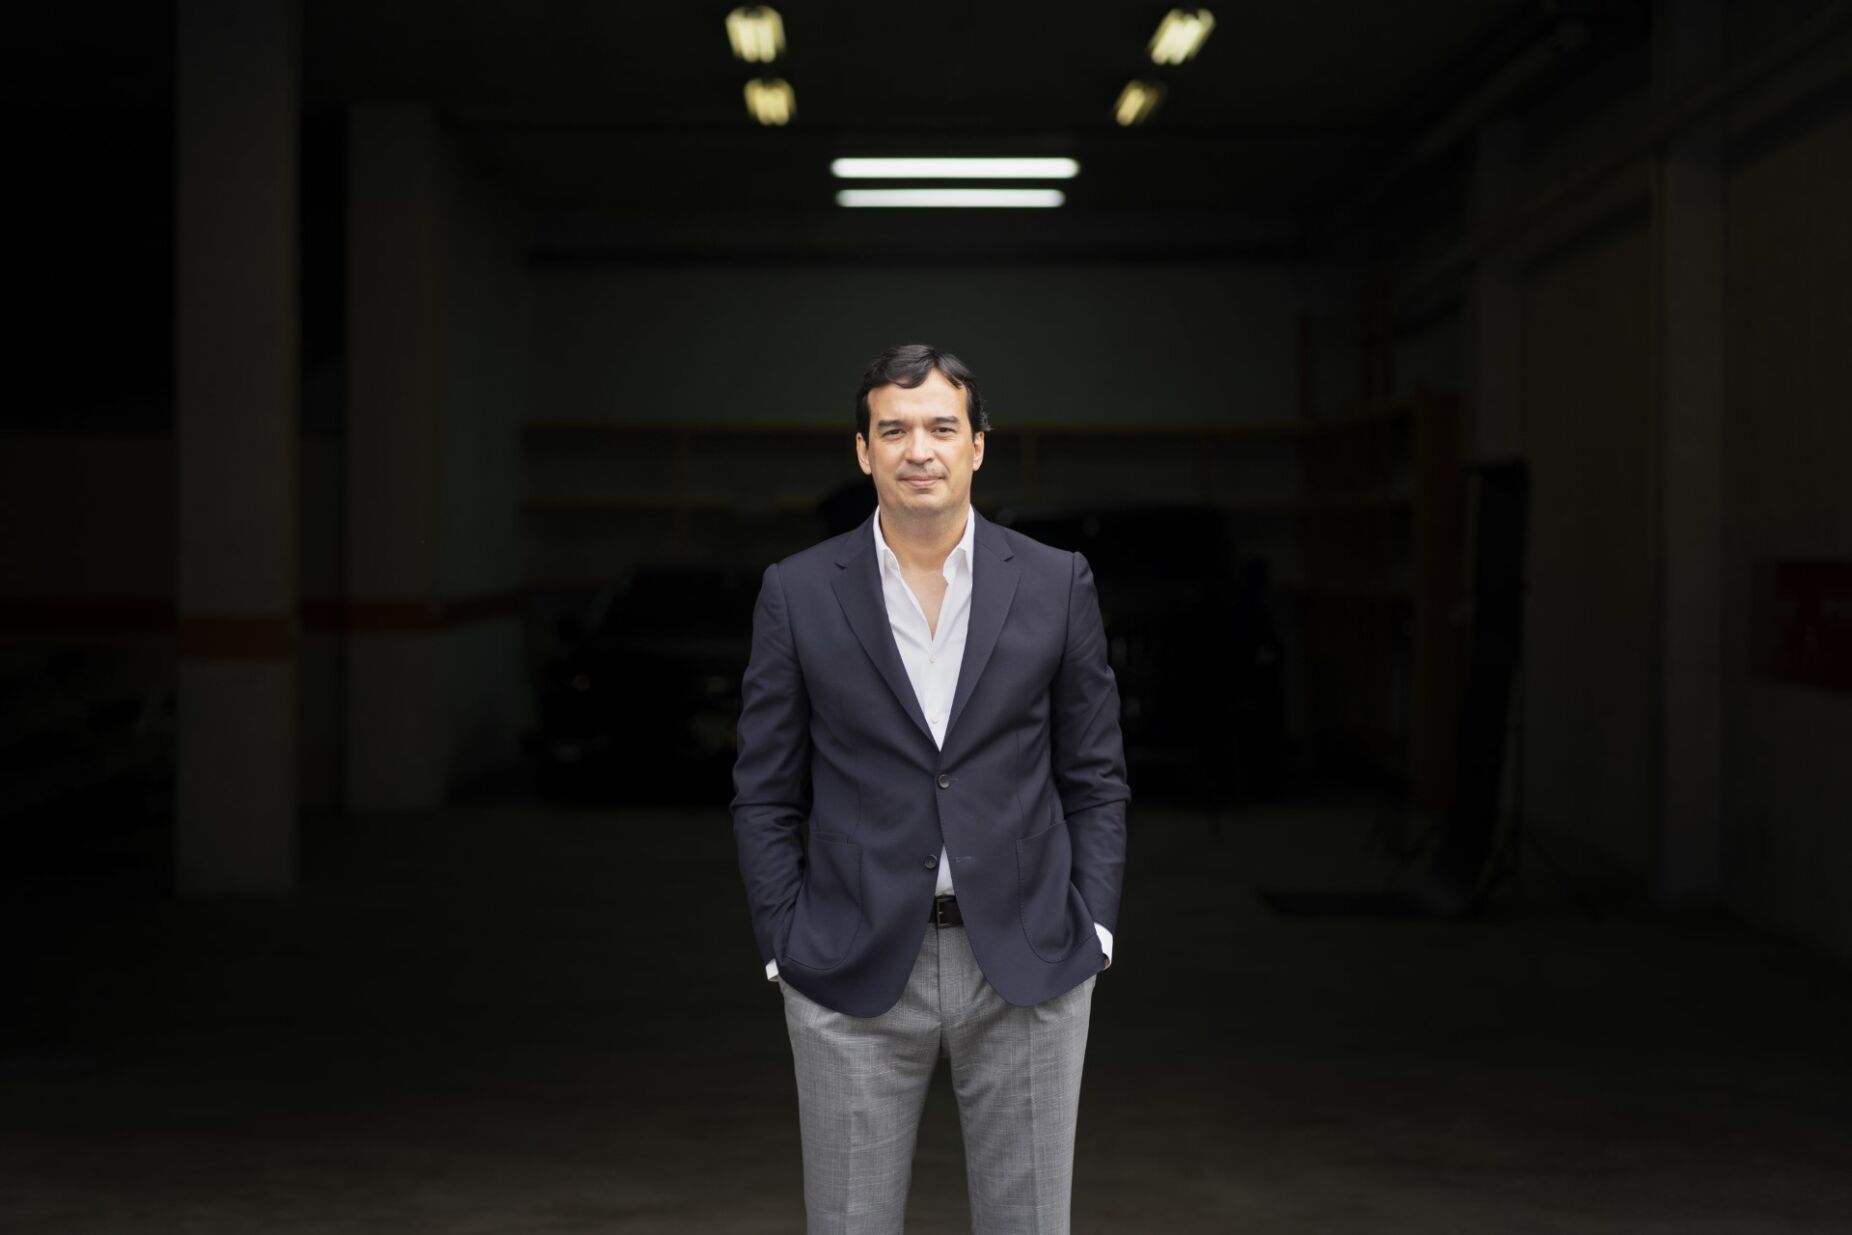 Ramiro Brito candidata-se à direção da AEMinho e pede taxa única no IRC